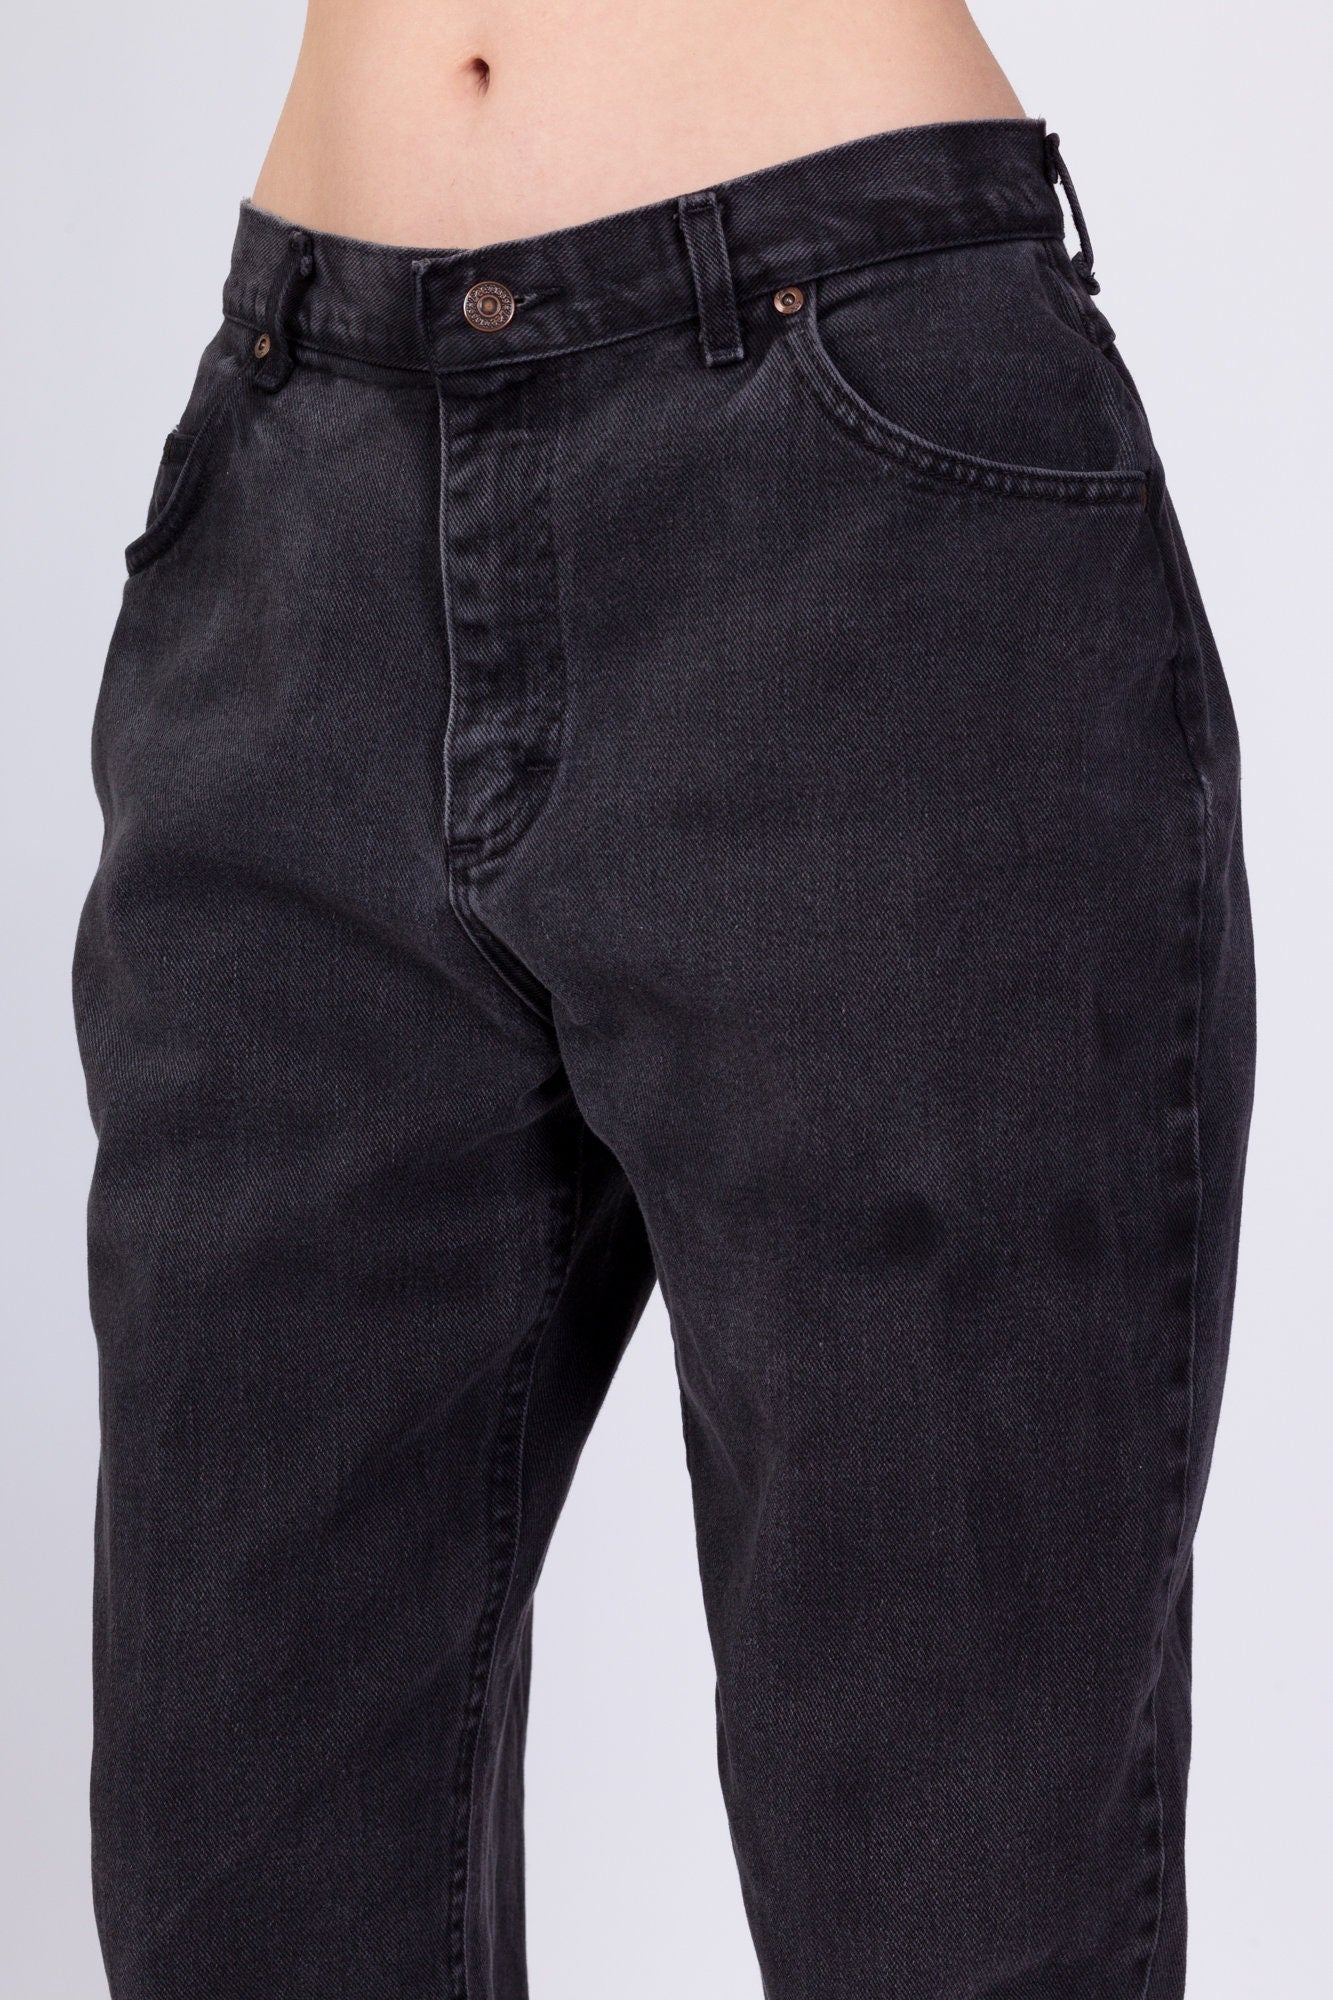 Vintage Lee Faded Black Jeans - Large, 31